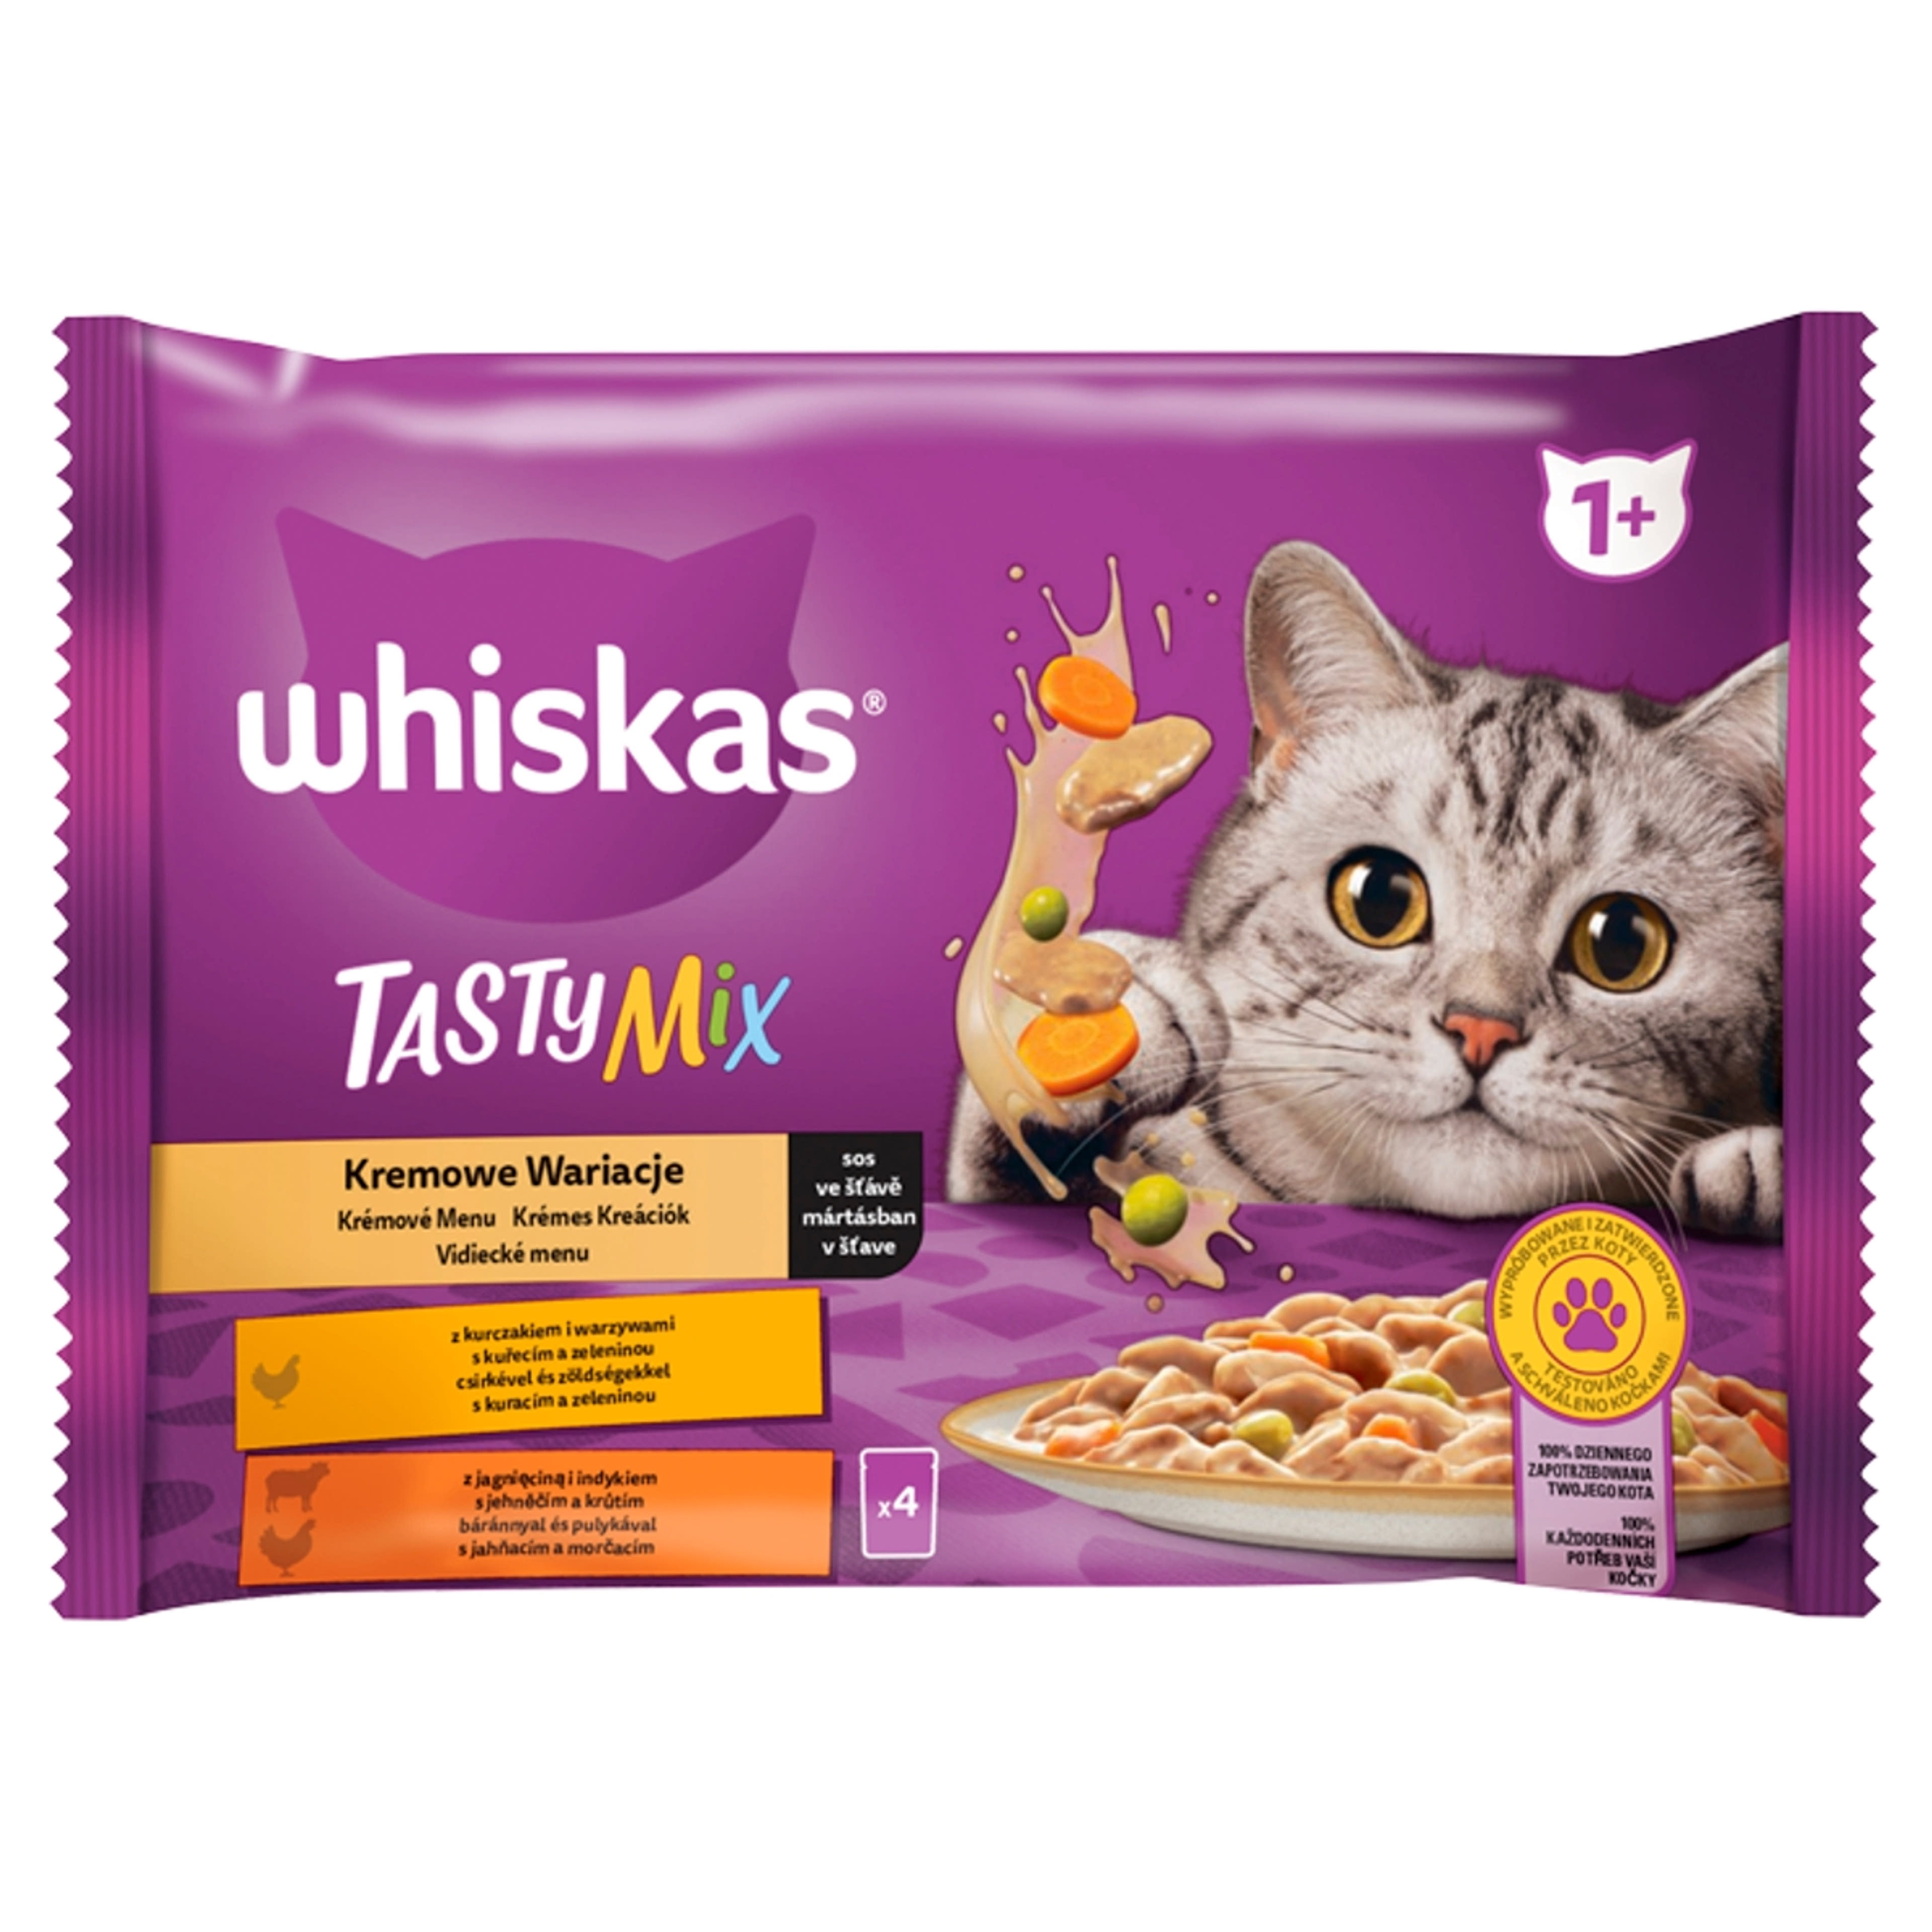 Whiskas 1+ Tasty Mix alutasak felnőtt macskáknak 4 x 85 g - 340 g